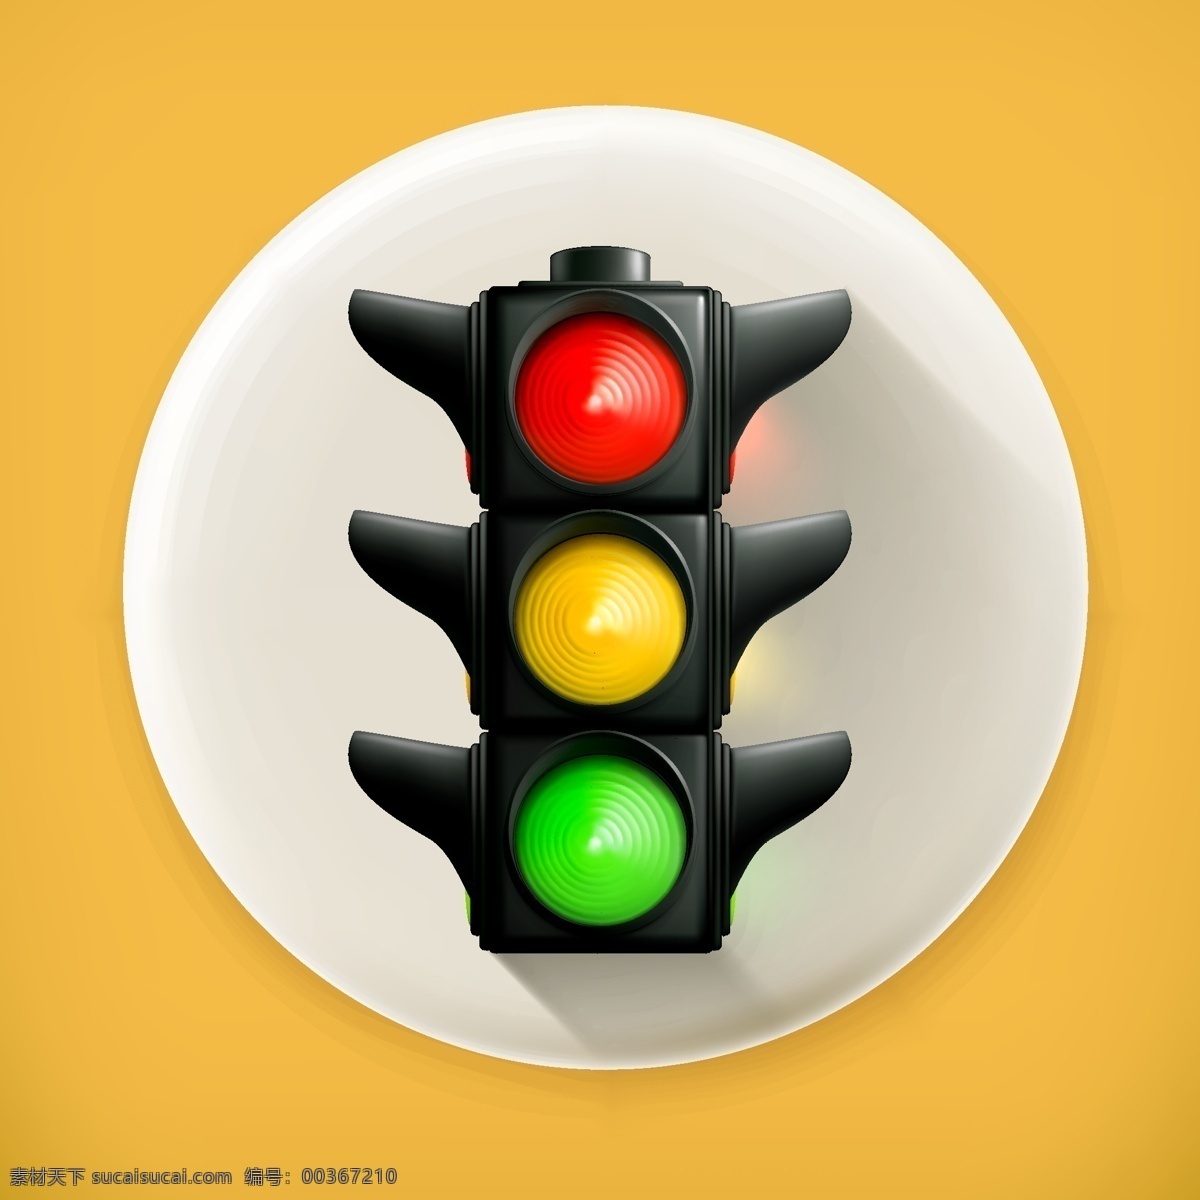 红绿灯 交通信号灯 红黄绿 矢量